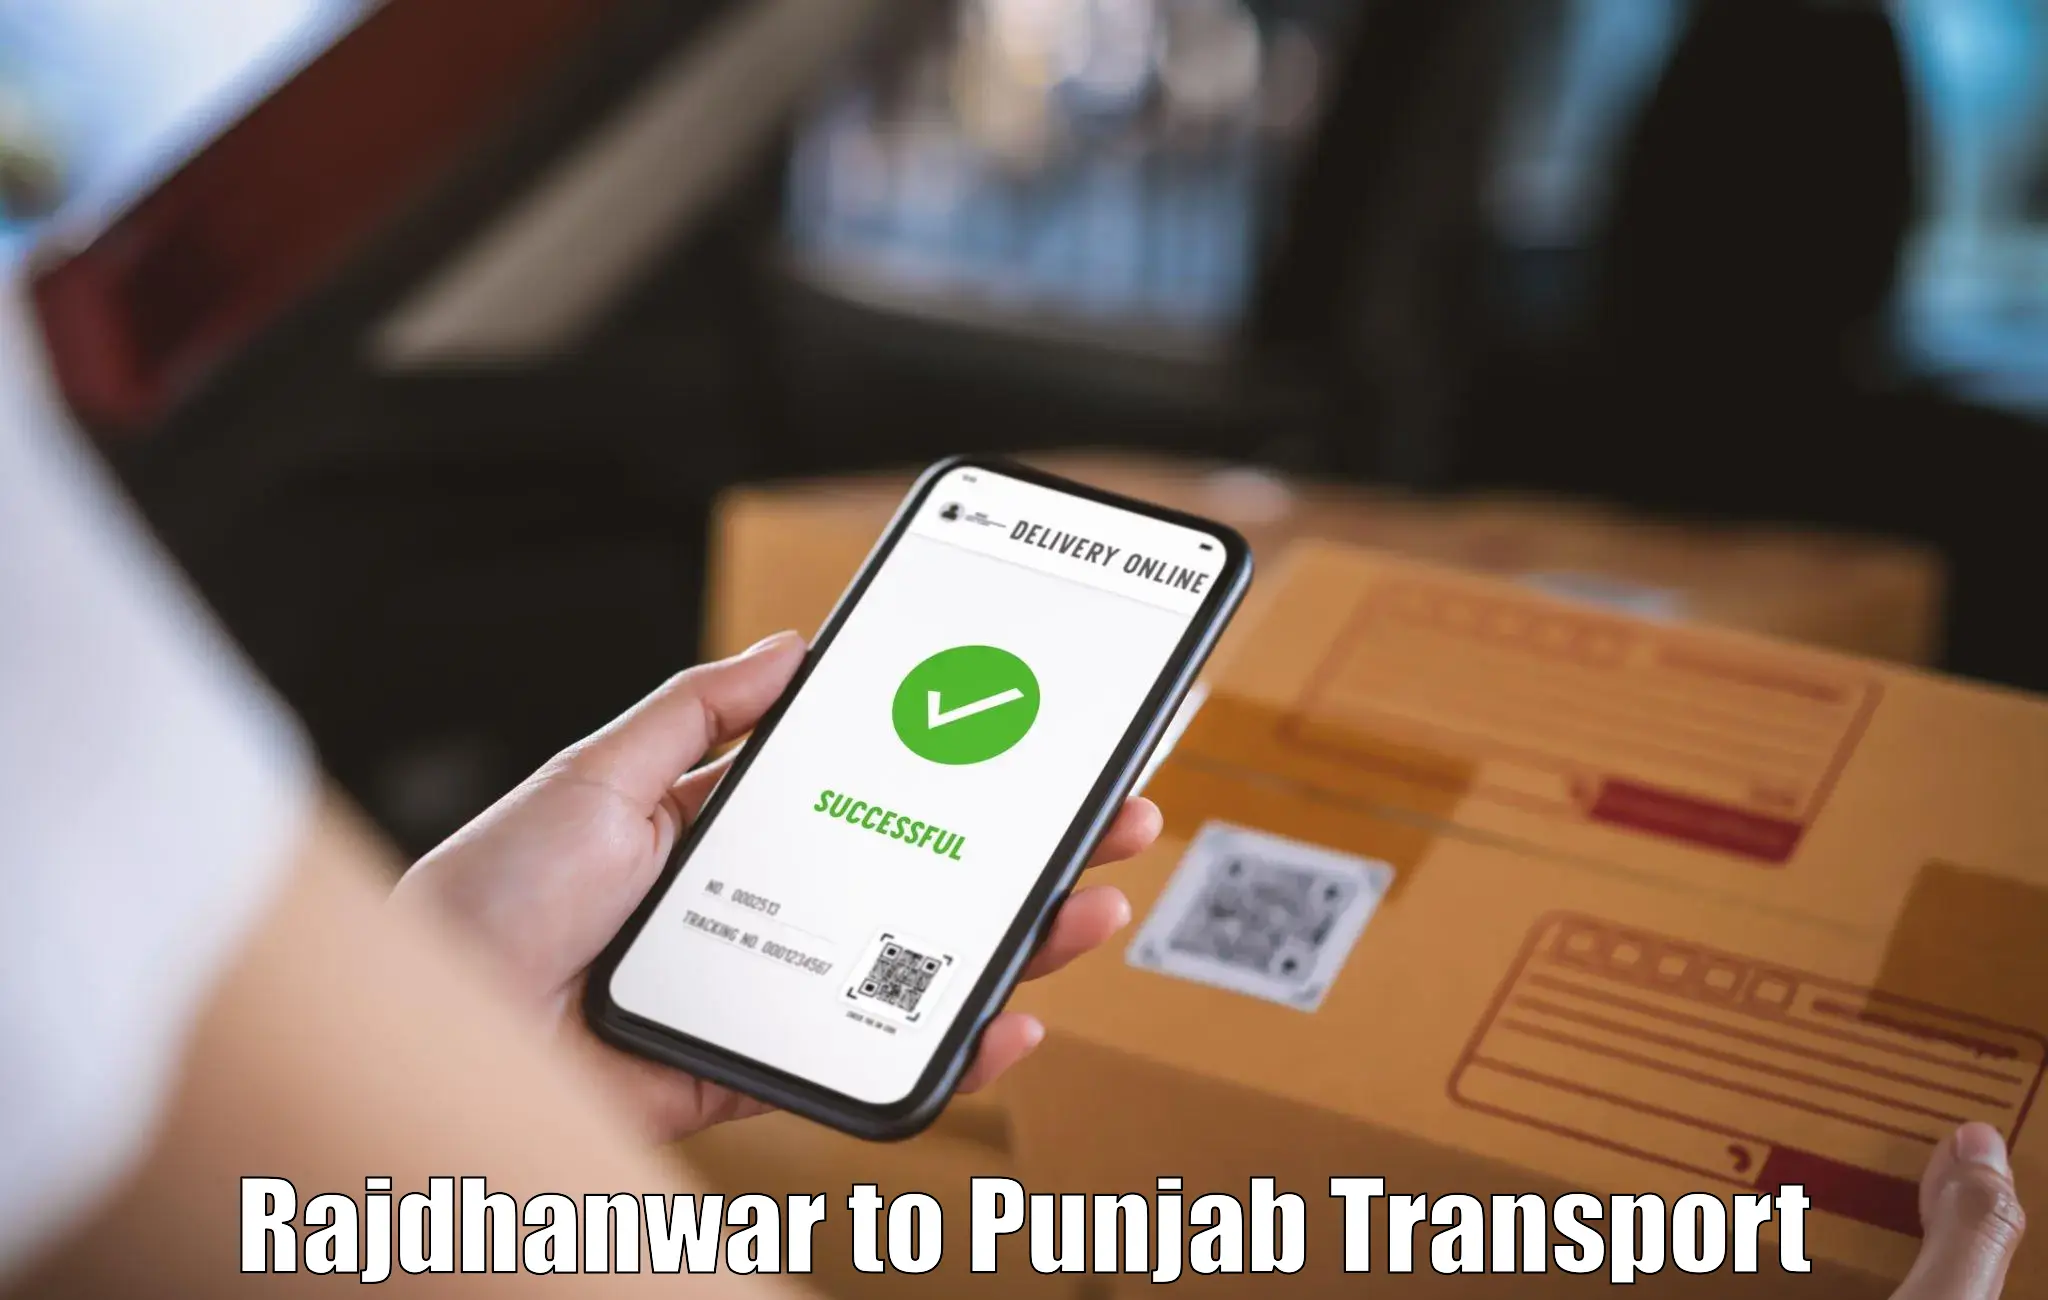 Nearest transport service Rajdhanwar to Khanna